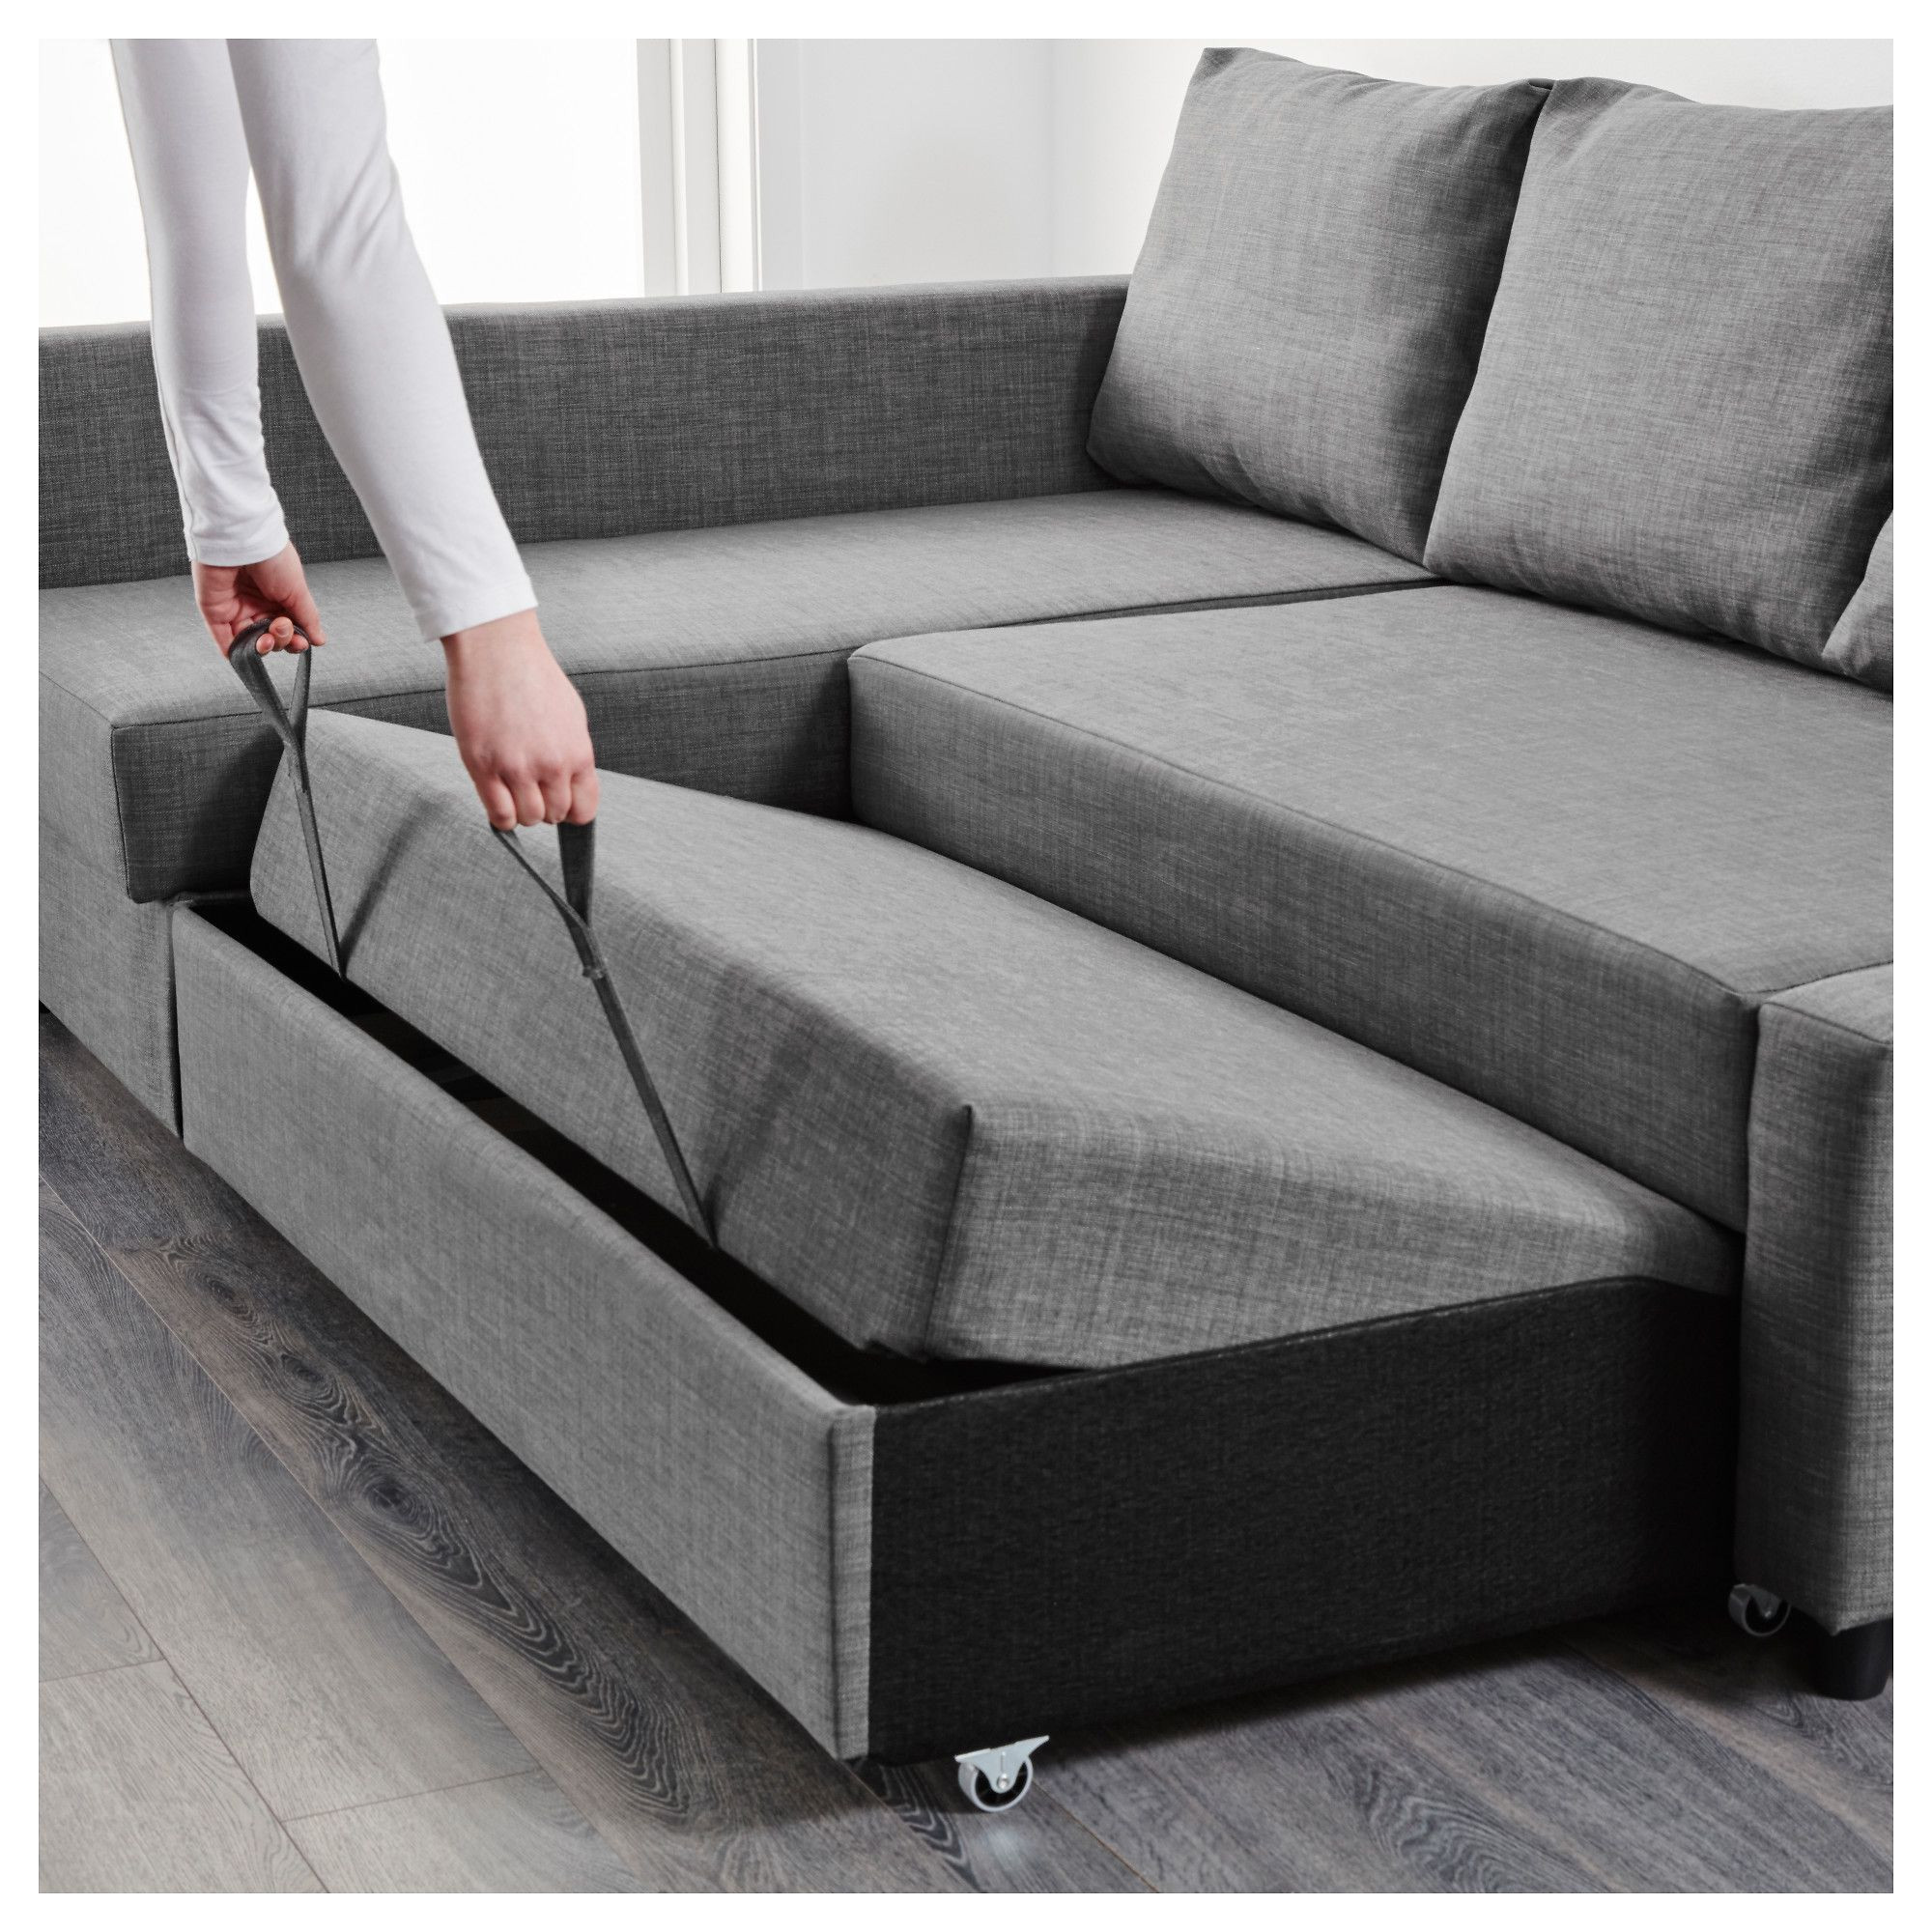 Ikea Friheten Sleeper sofa Review Grey Corner sofa Decor Inspiration sofa Bed sofa Corner sofa